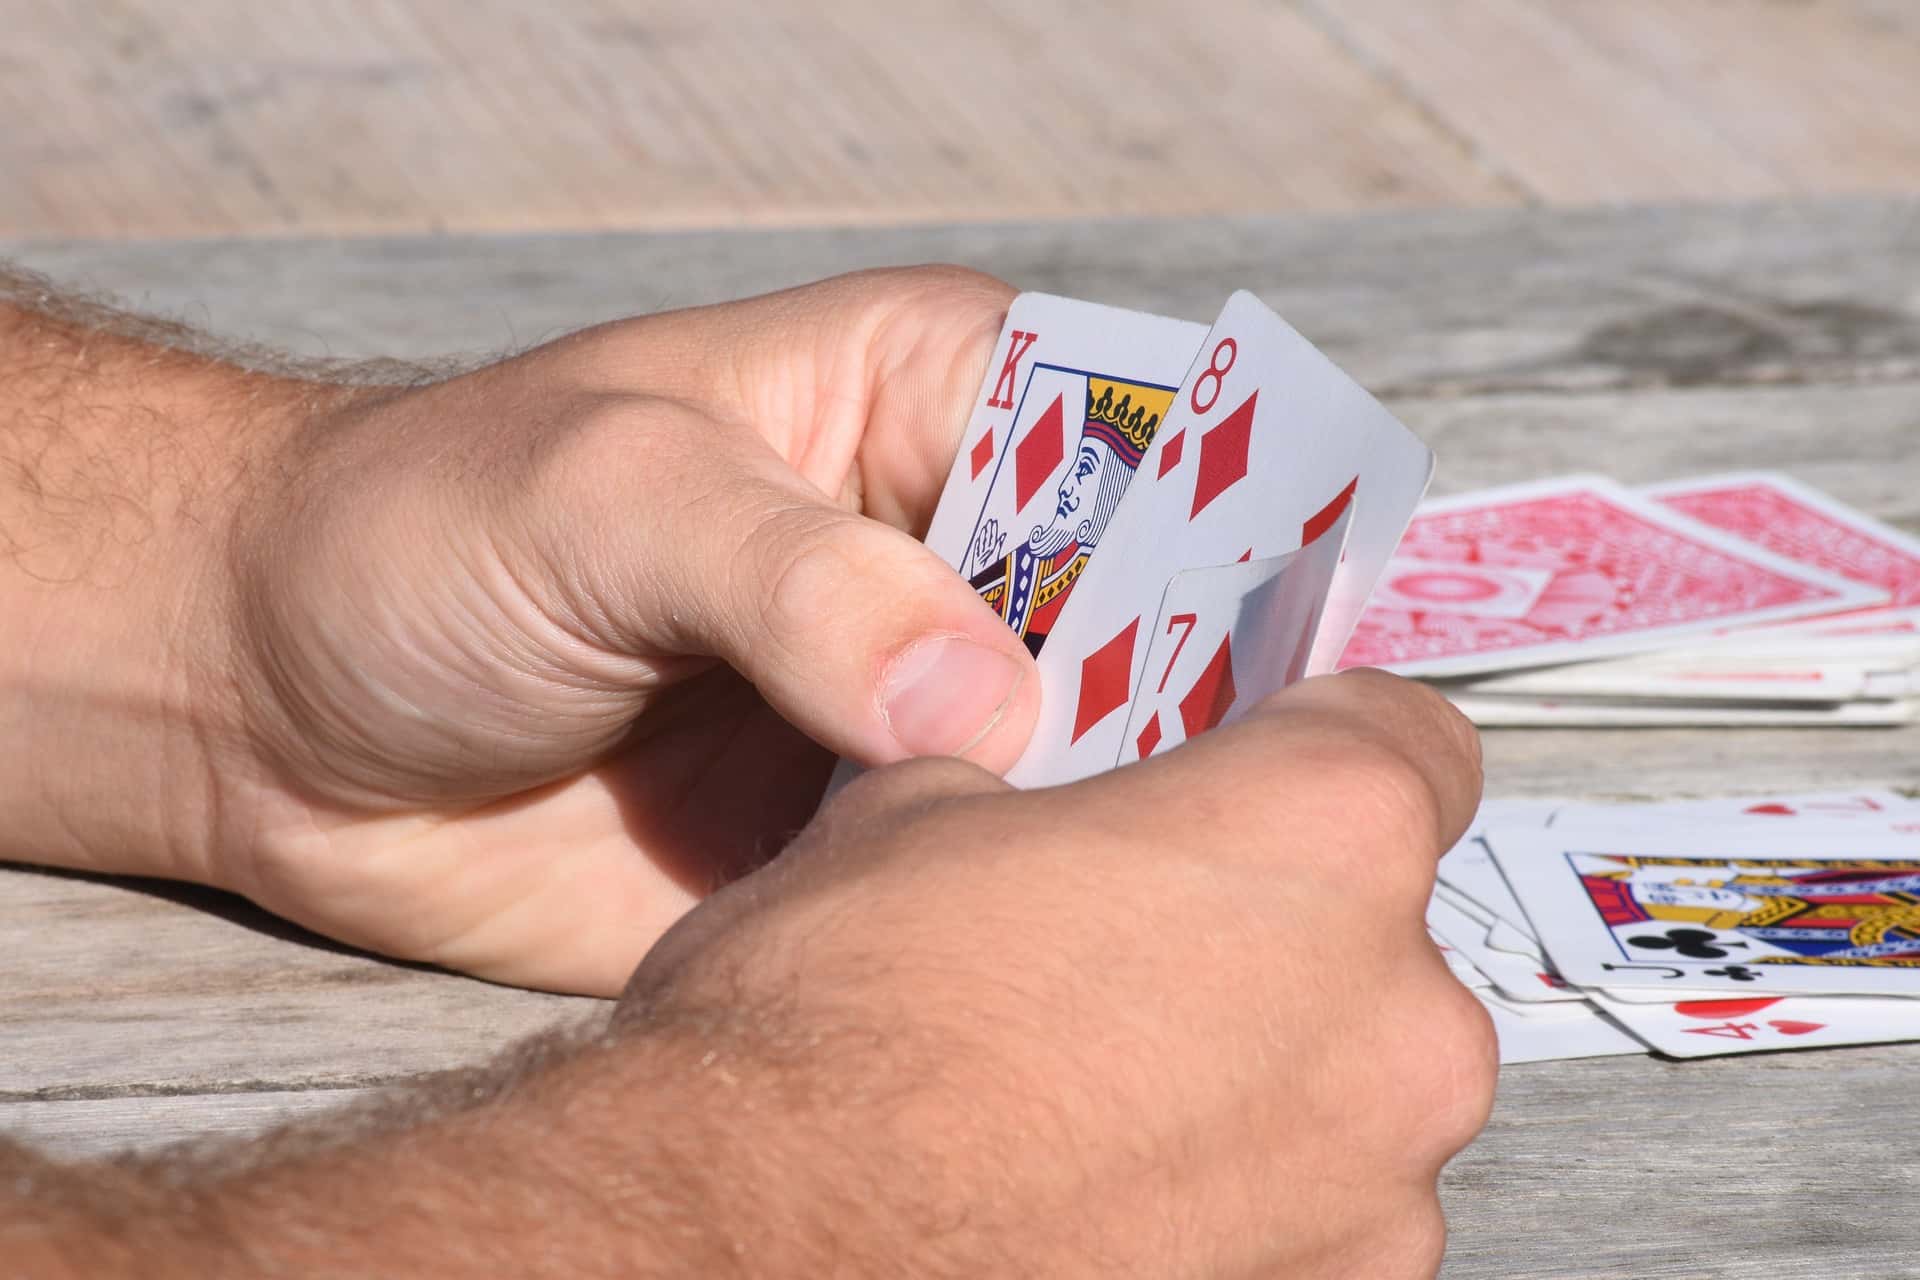 Карты 15 минут. Карты в руках. Человек с игральными картами в руках. Рука с карточкой. Несколько карт в руке.